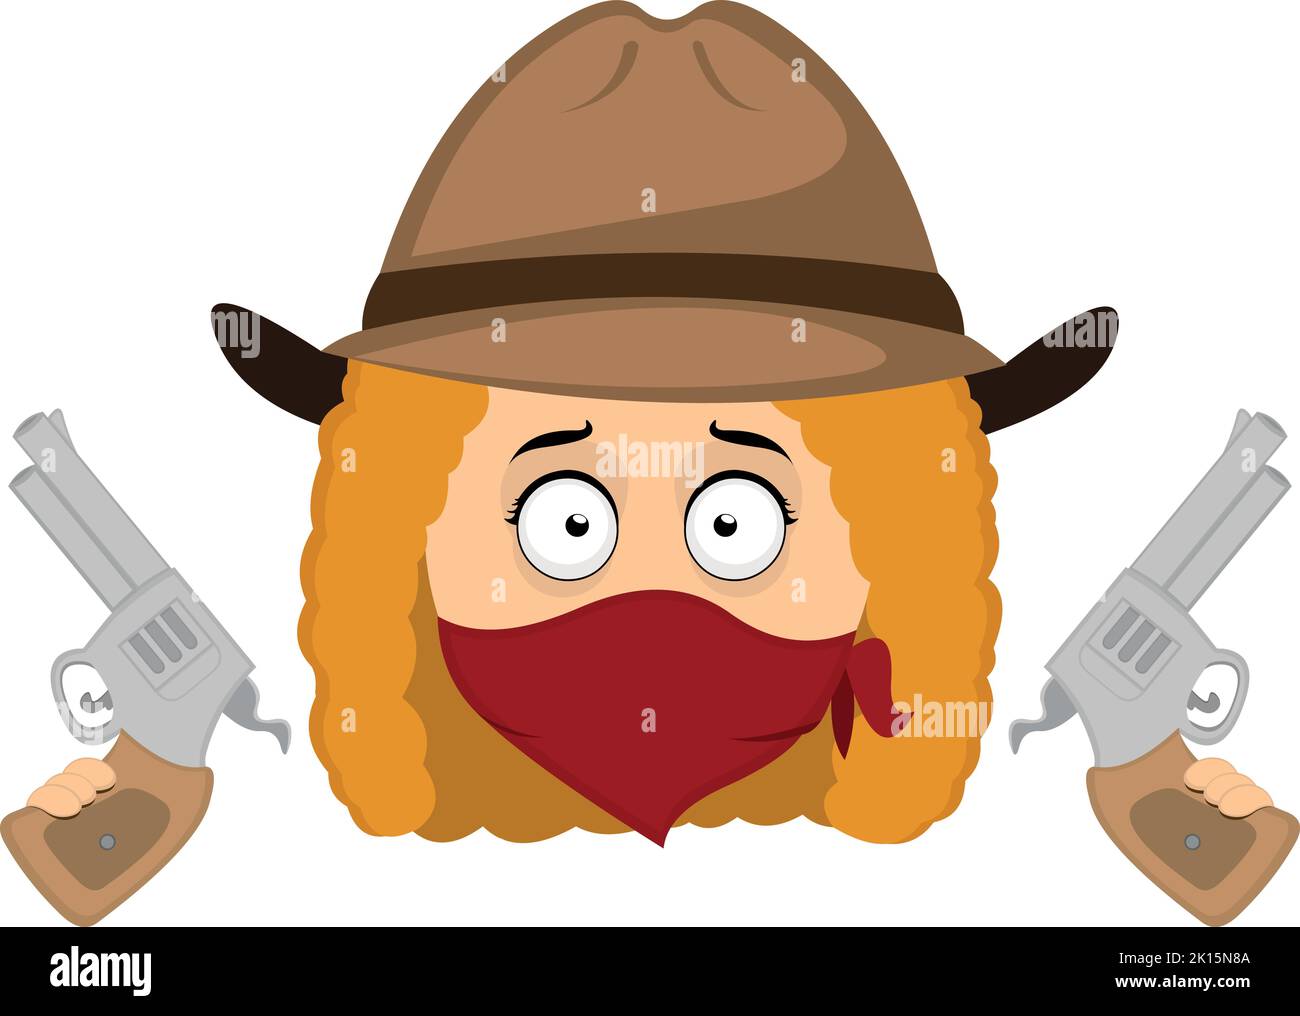 Illustration vectorielle de l'émoticône d'une femme cowboy bandit de l'extrême ouest, avec un chapeau, un foulard couvrant son visage et des armes dans ses mains Illustration de Vecteur